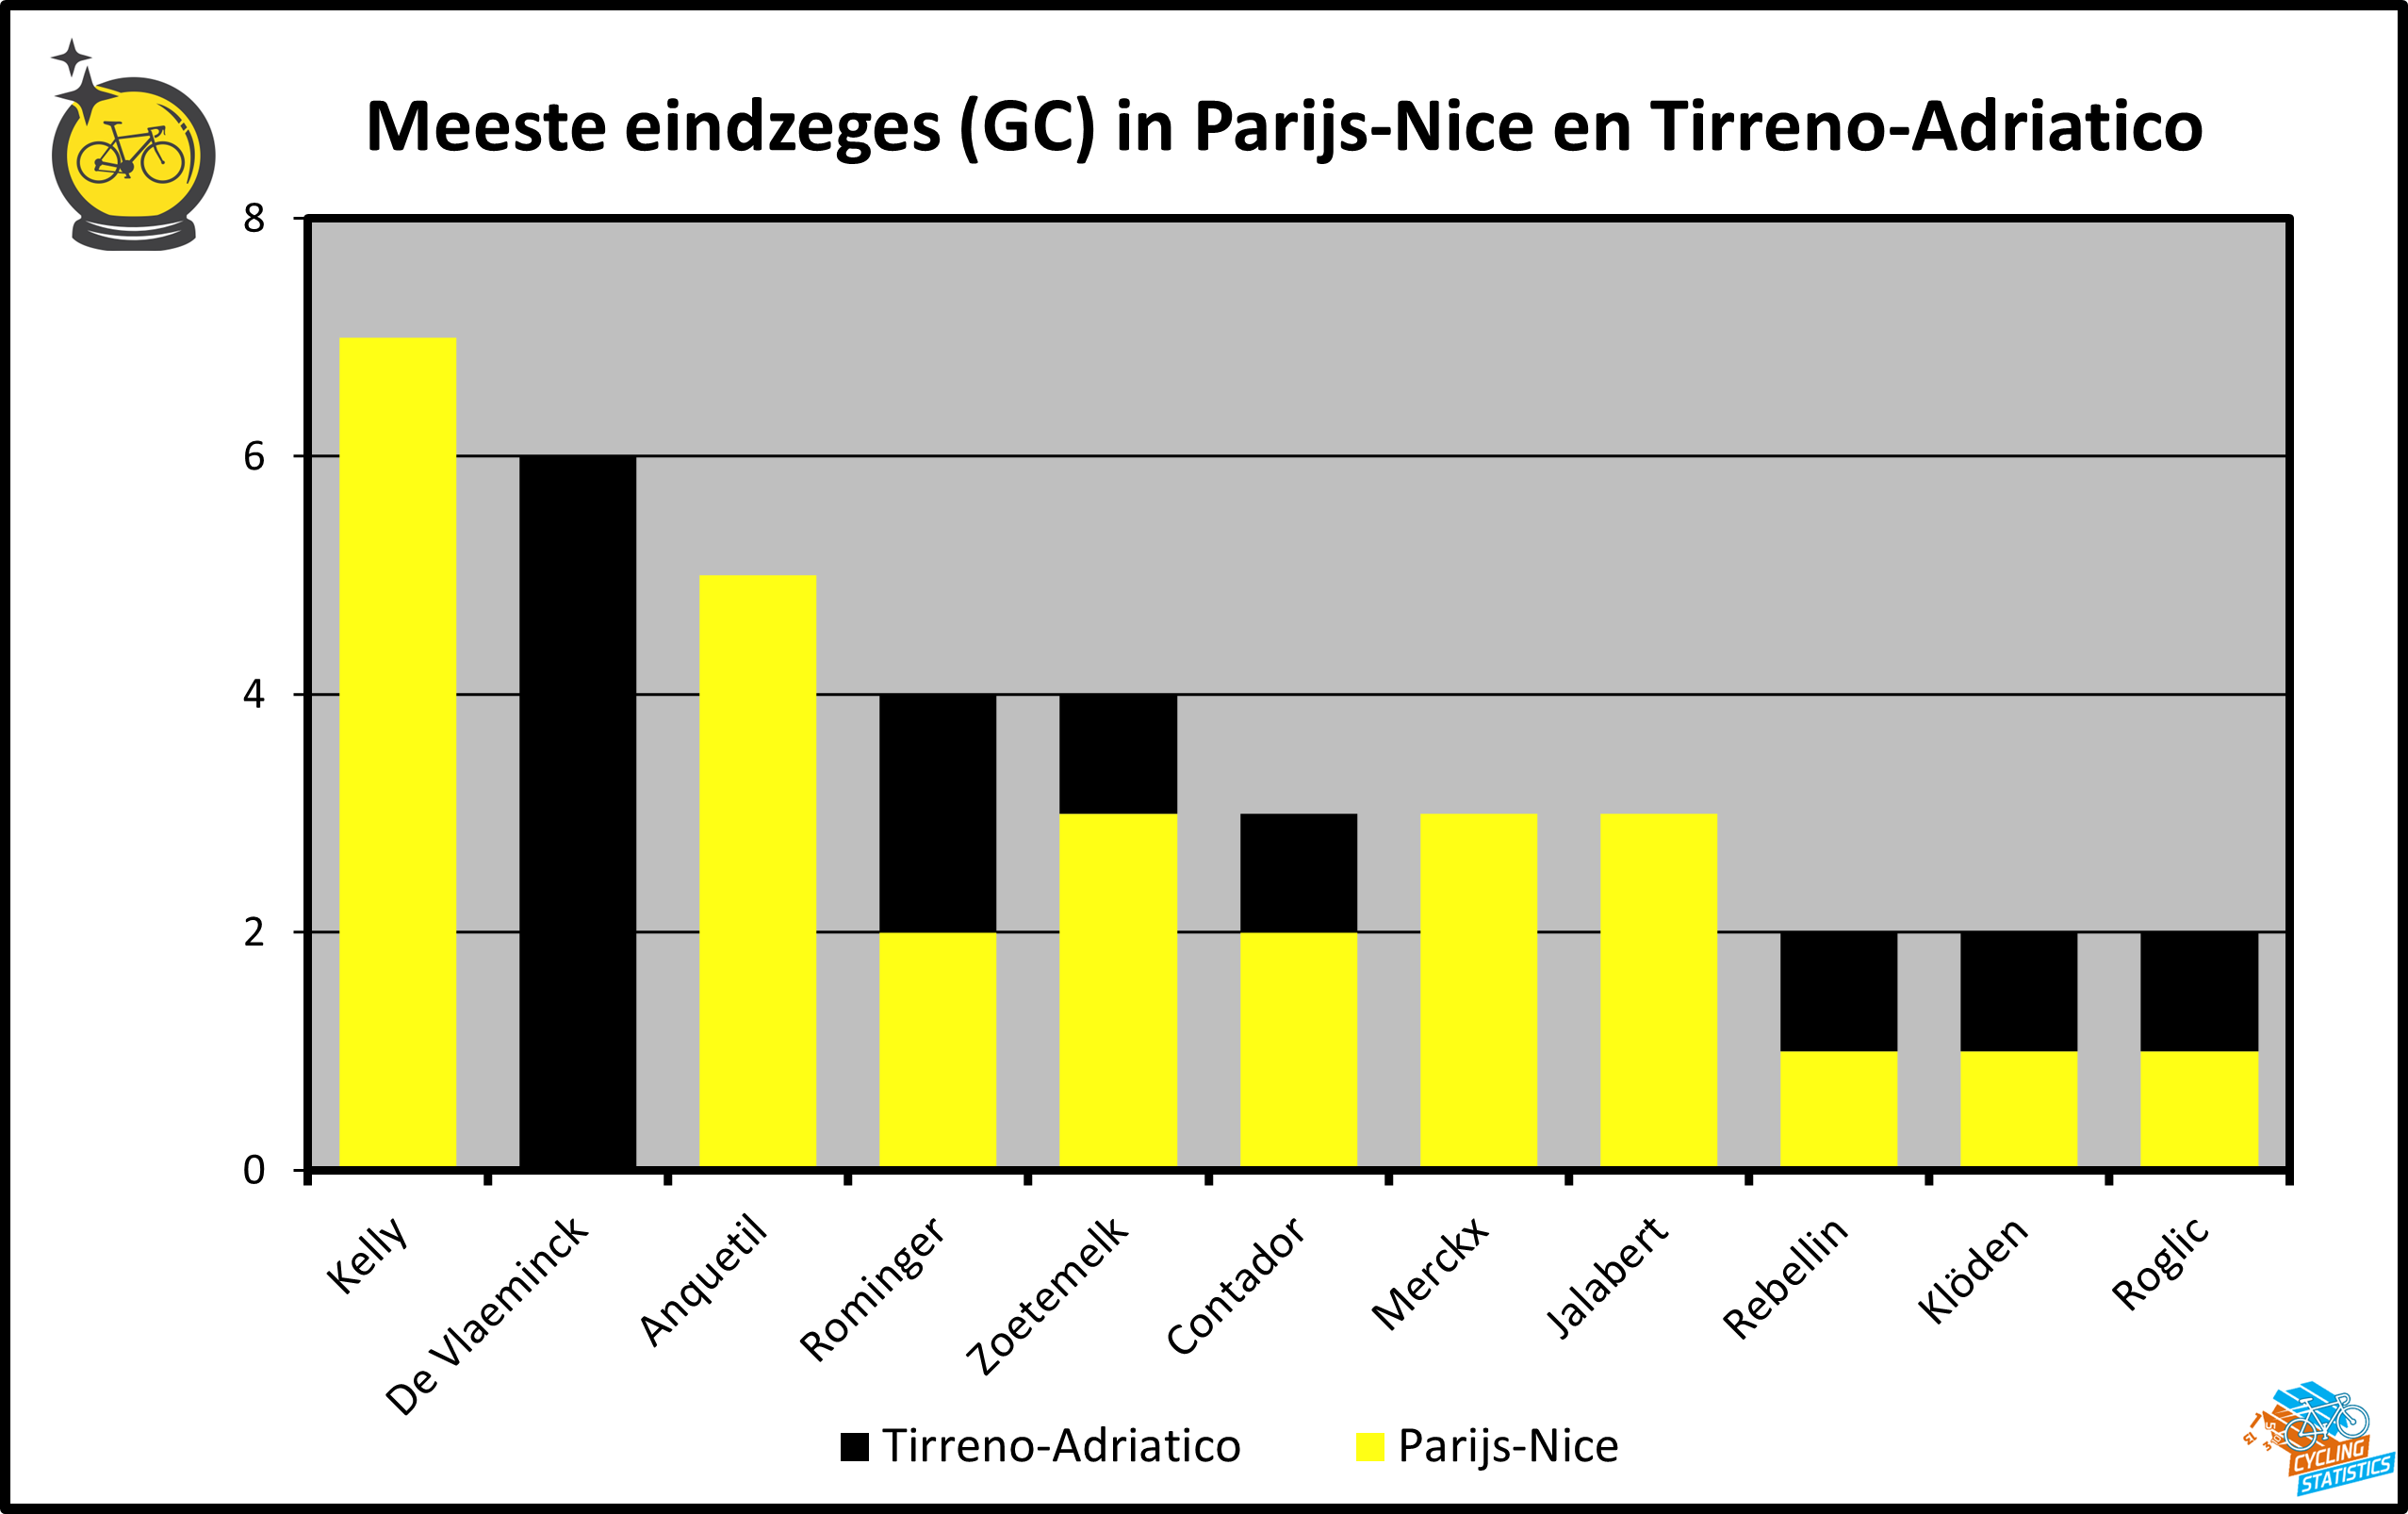 Meeste eindzeges in Parijs-Nice en Tirreno-Adriatico